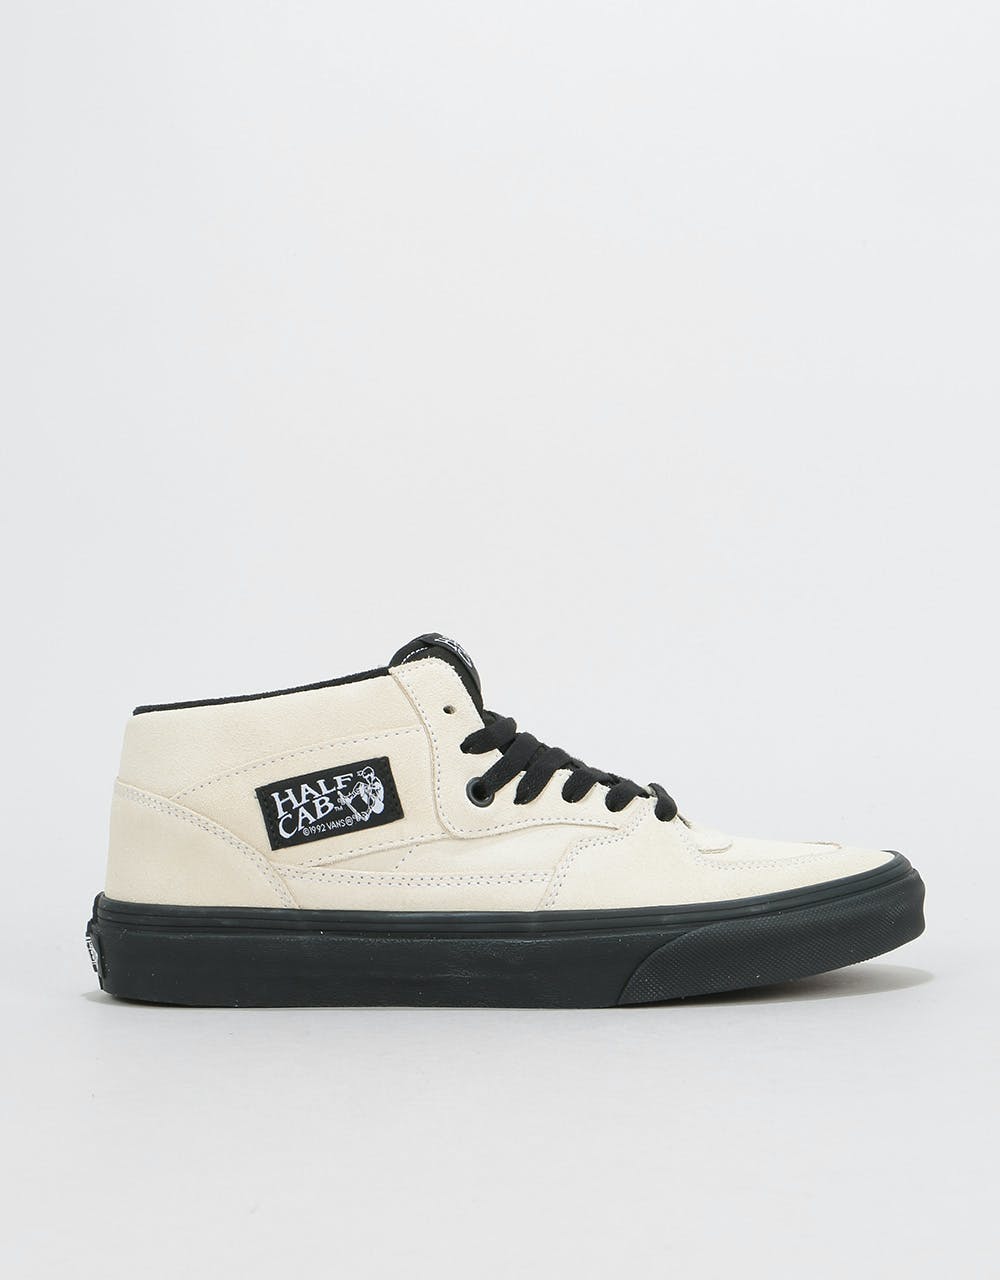 Vans Half Cab Skate Shoes - (Black Outsole) Classic White/Black